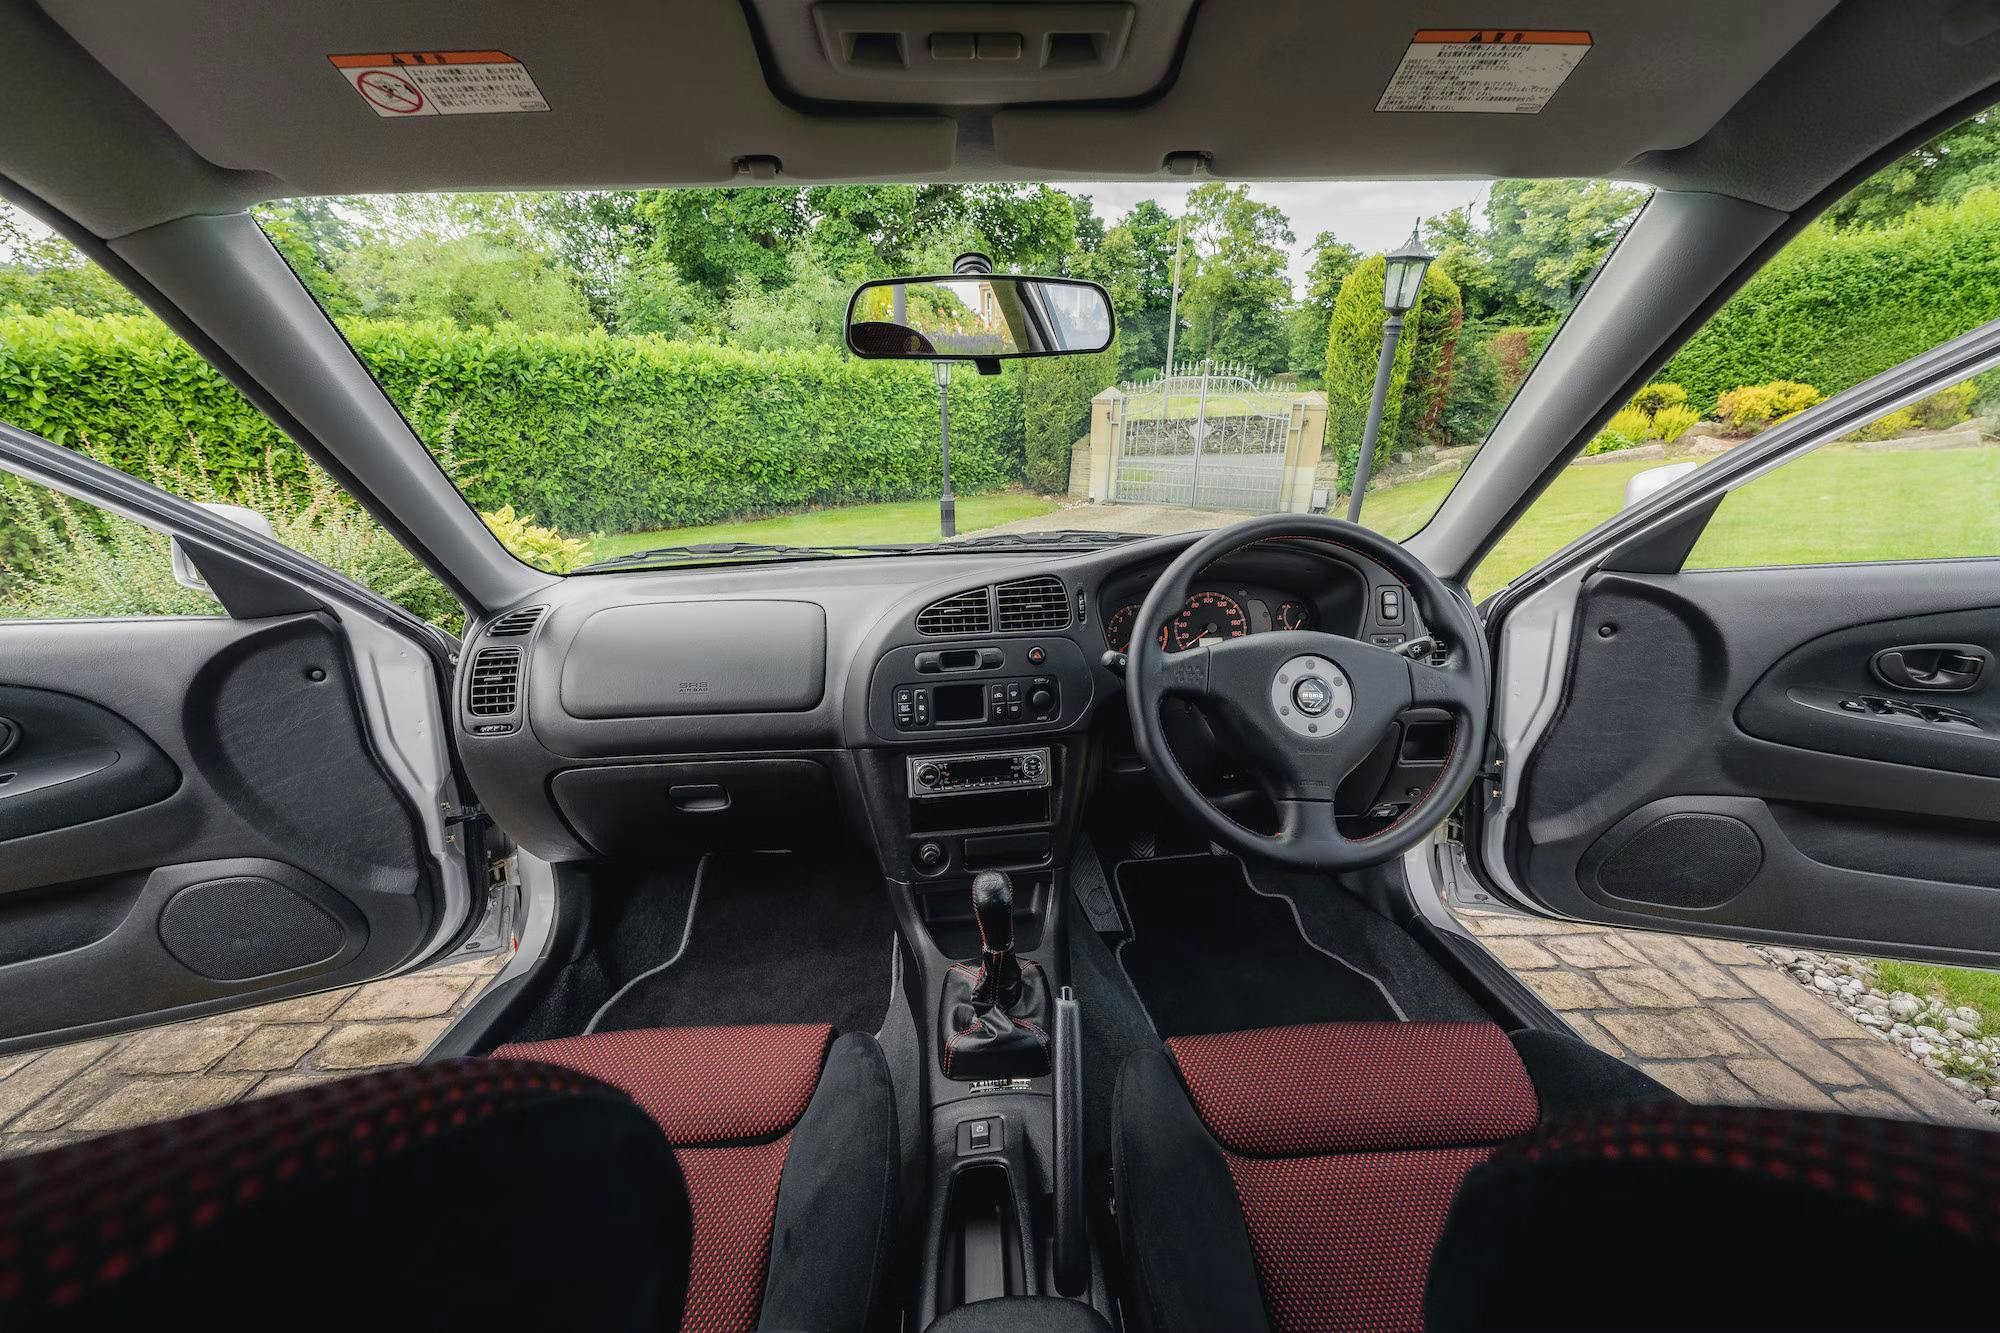 Evo VI Tommi Makinen edition interior front wide angle